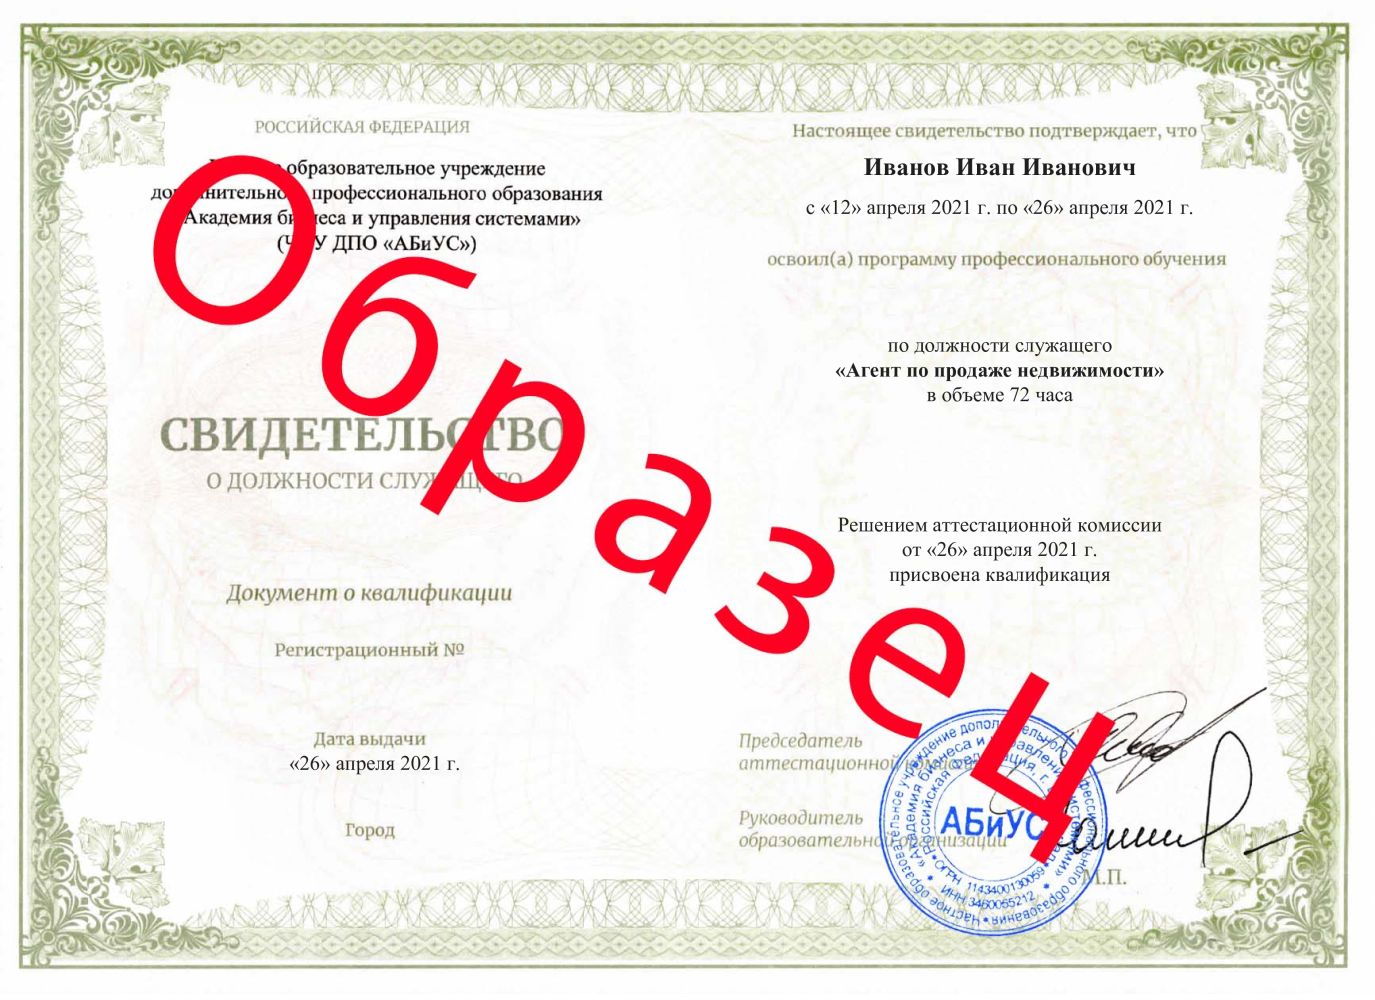 Свидетельство Агент по продаже недвижимости 72 часа 10750 руб.